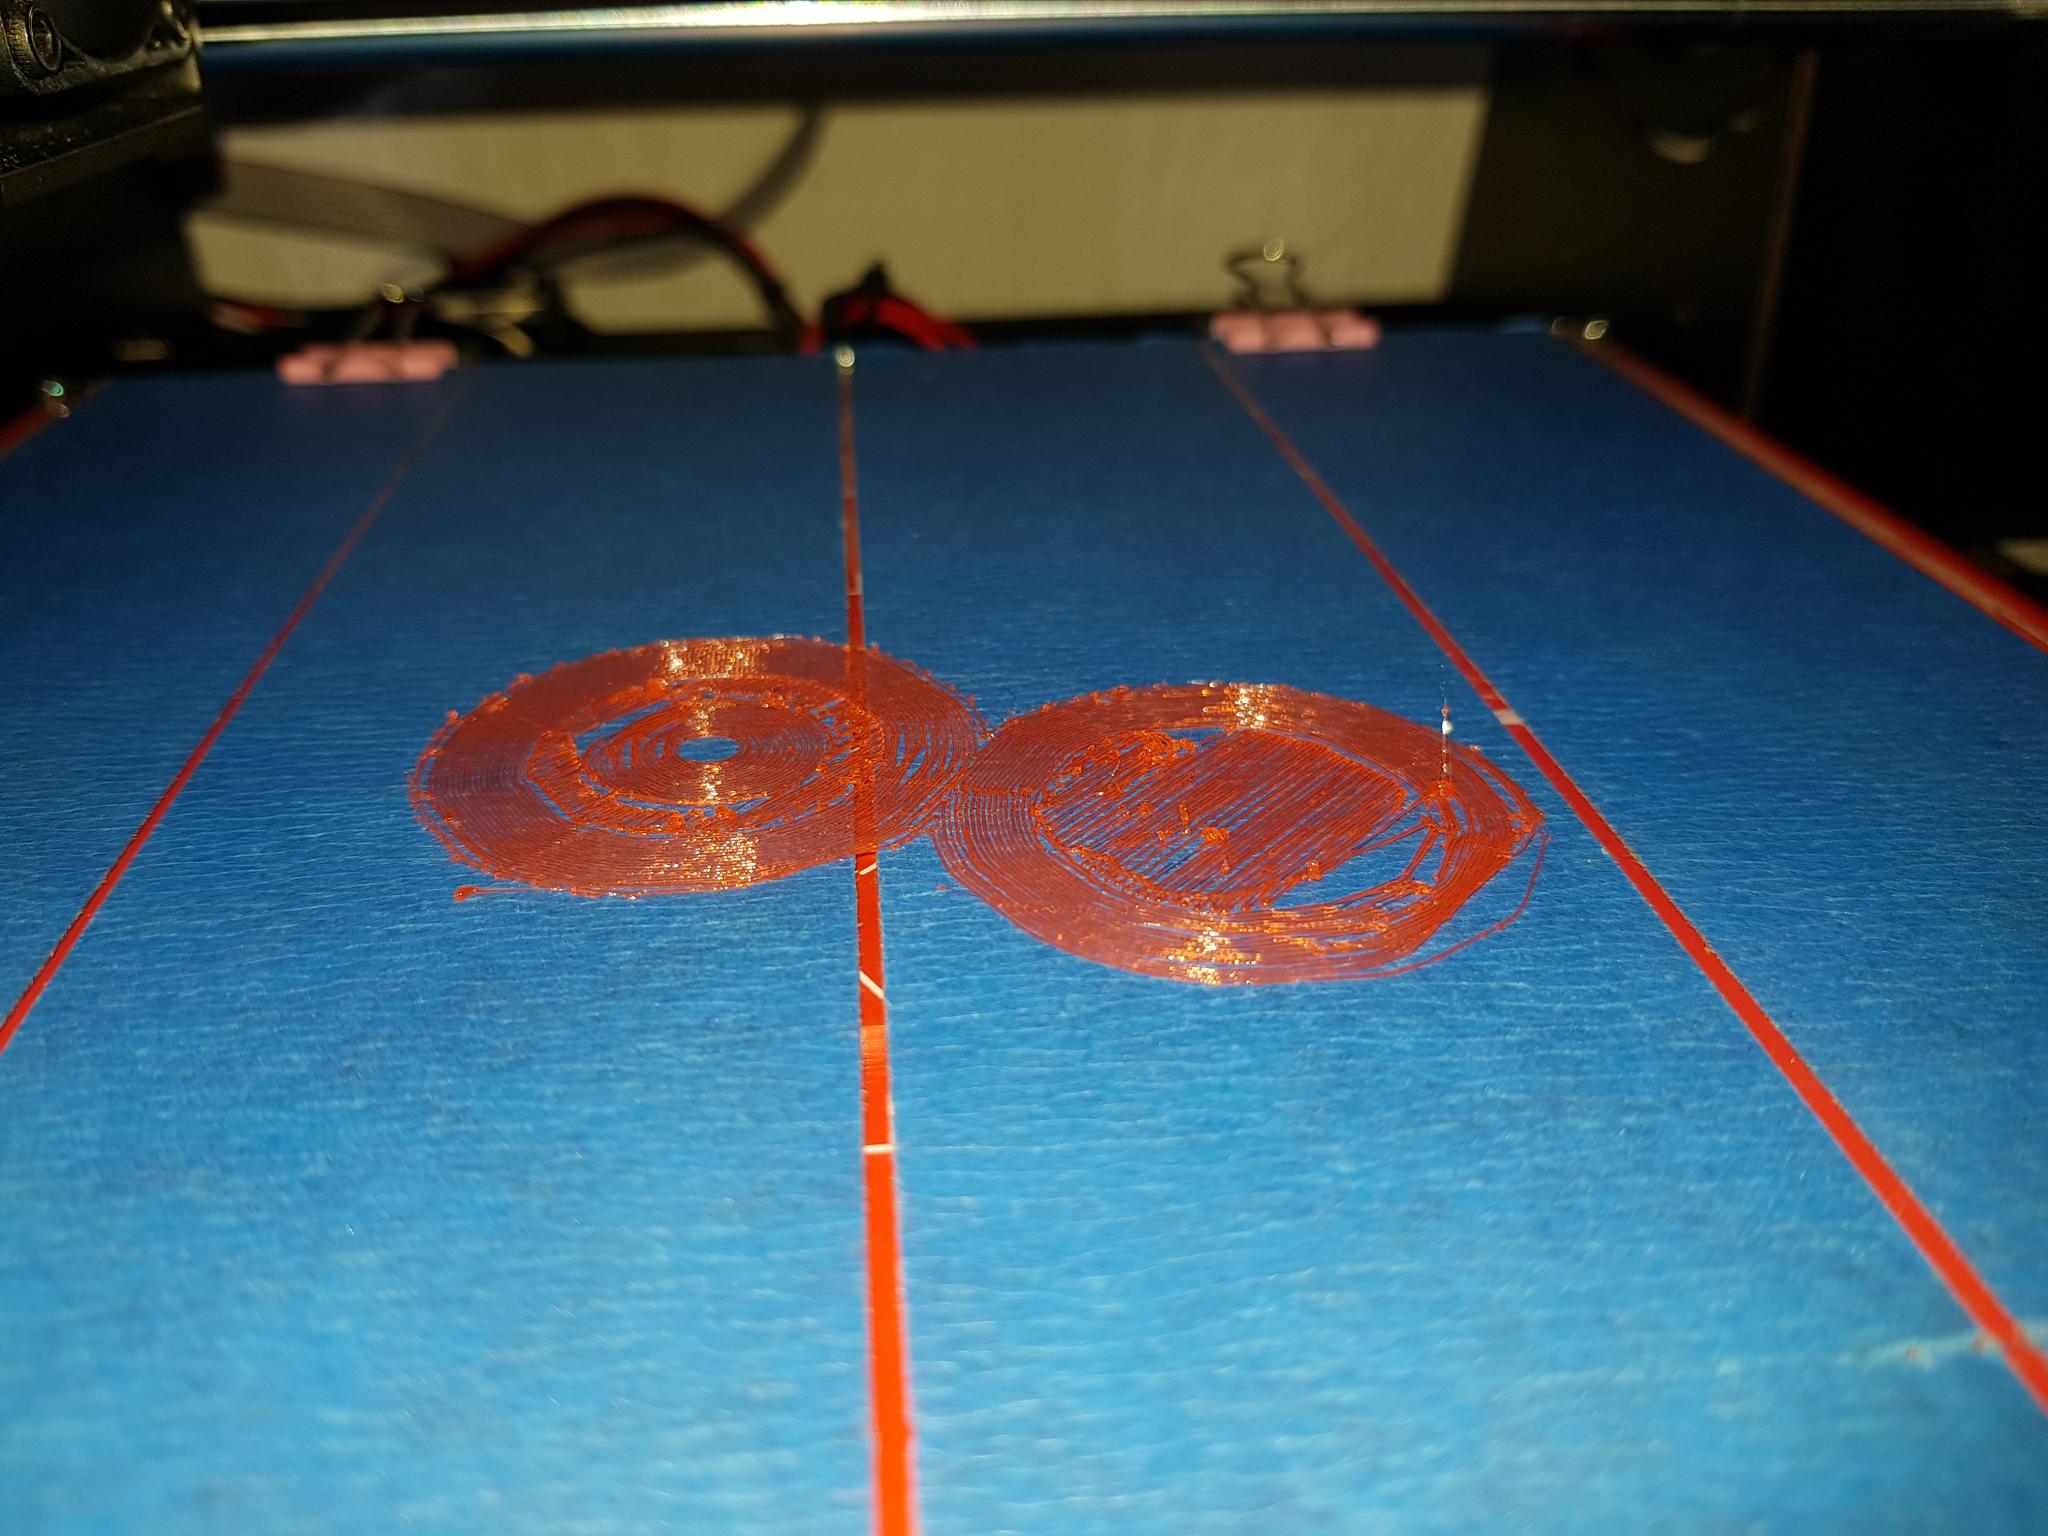 le fil ne colle pas - CTC - Forum pour les imprimantes 3D et l'impression 3D